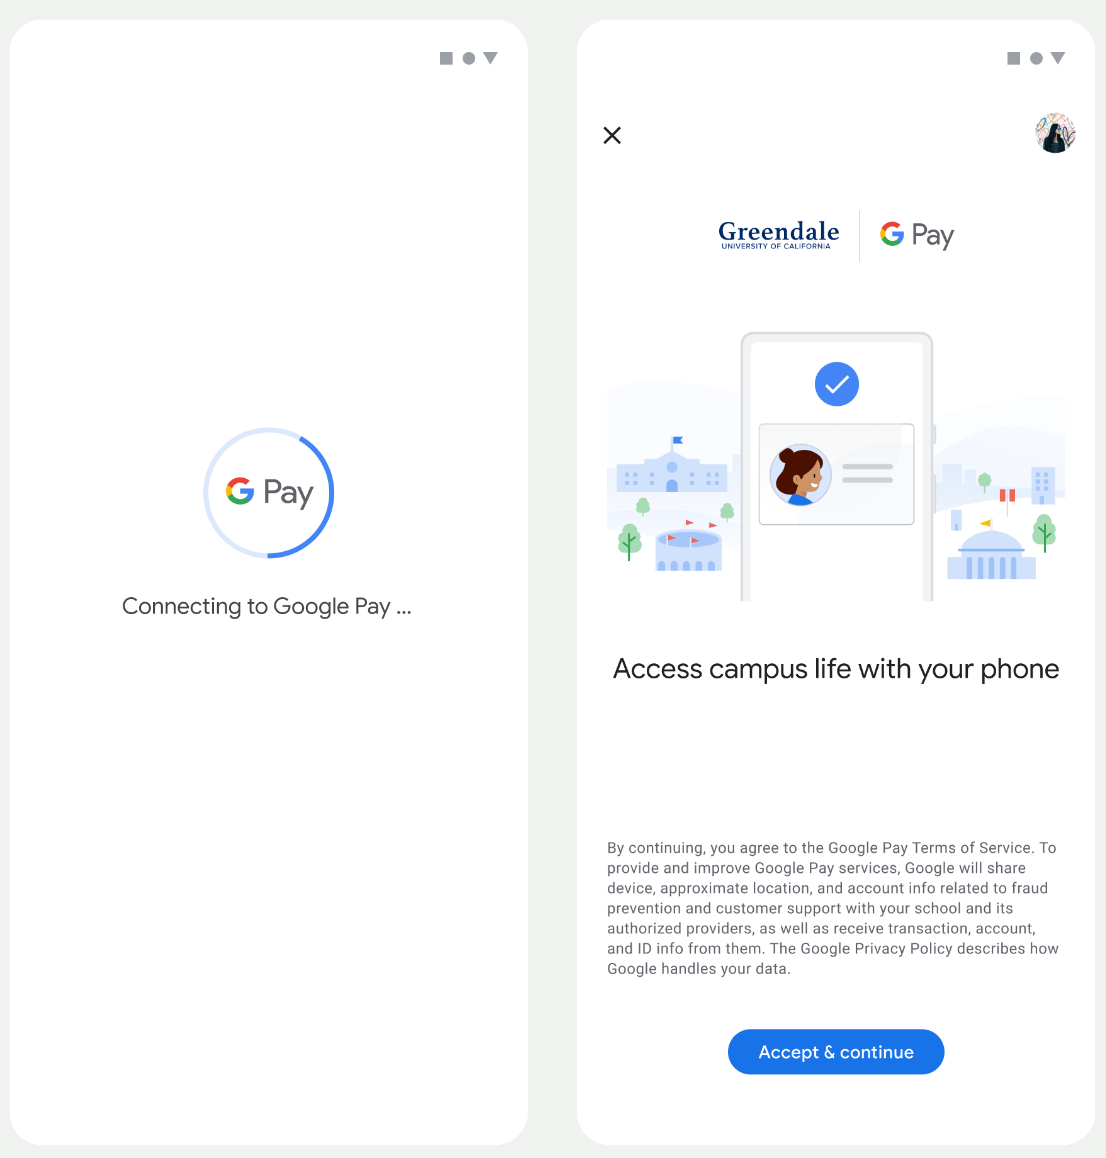 در صفحه اول، برنامه به Google Wallet متصل می شود. در صفحه دوم، کاربر شرایط خدمات را می پذیرد و ادامه می دهد.